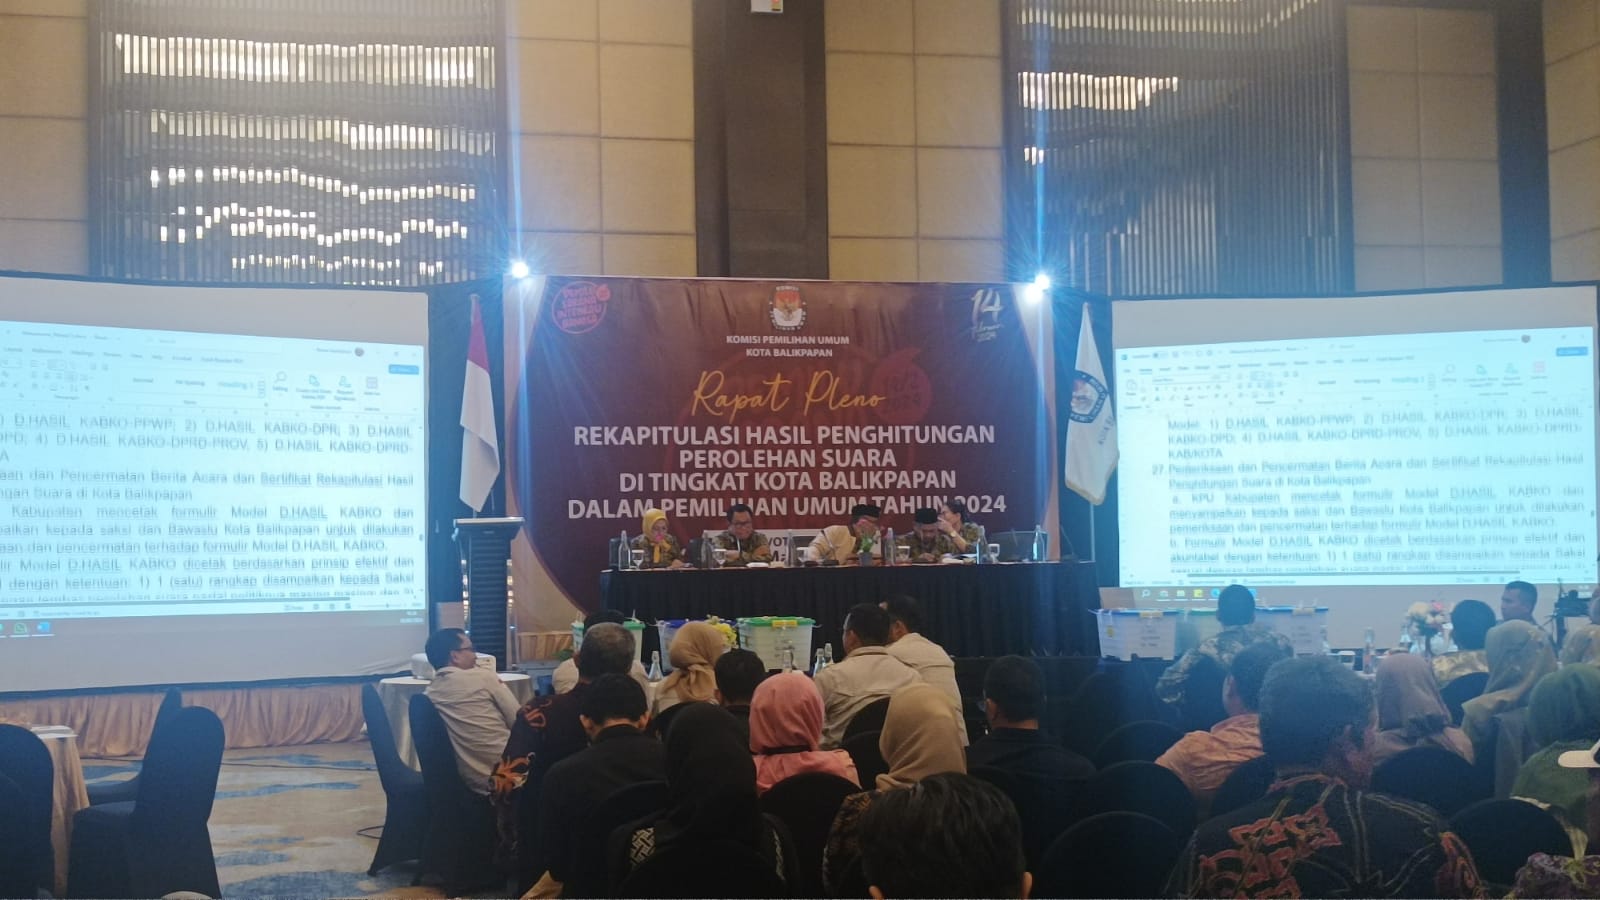 KPU Balikpapan Gelar Rapat Pleno Rekapitulasi Hasil Perhitungan Perolehan Suara Pemilu Tahun 2024